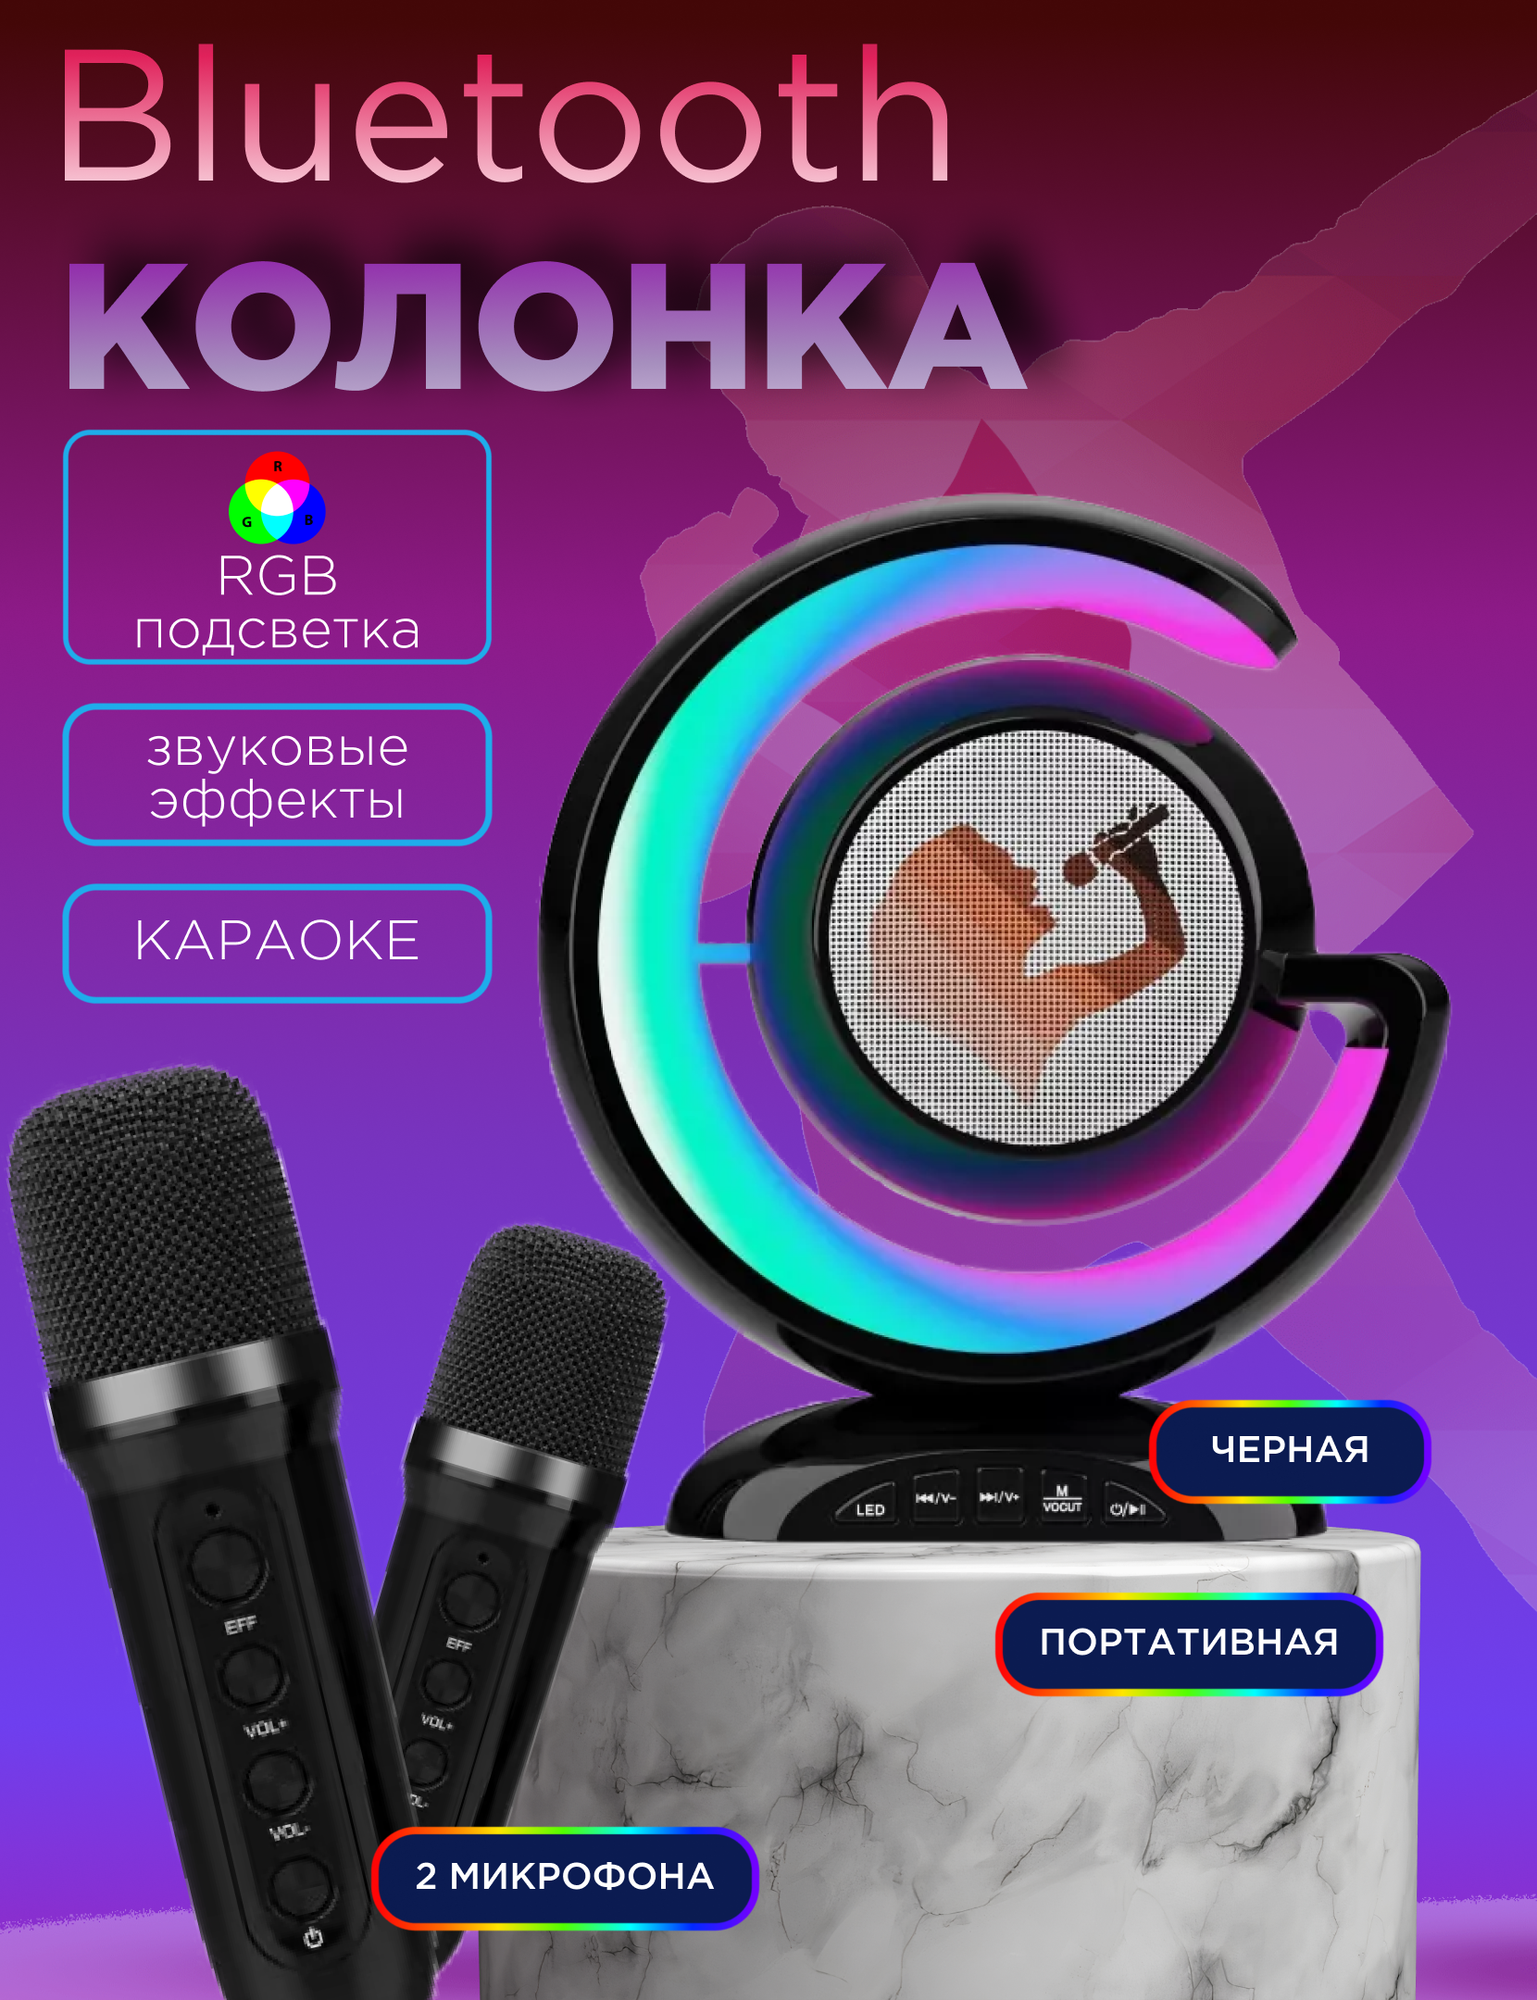 Беспроводная Bluetooth-Колонка для караоке с 2 микрофонами 2000 Вт